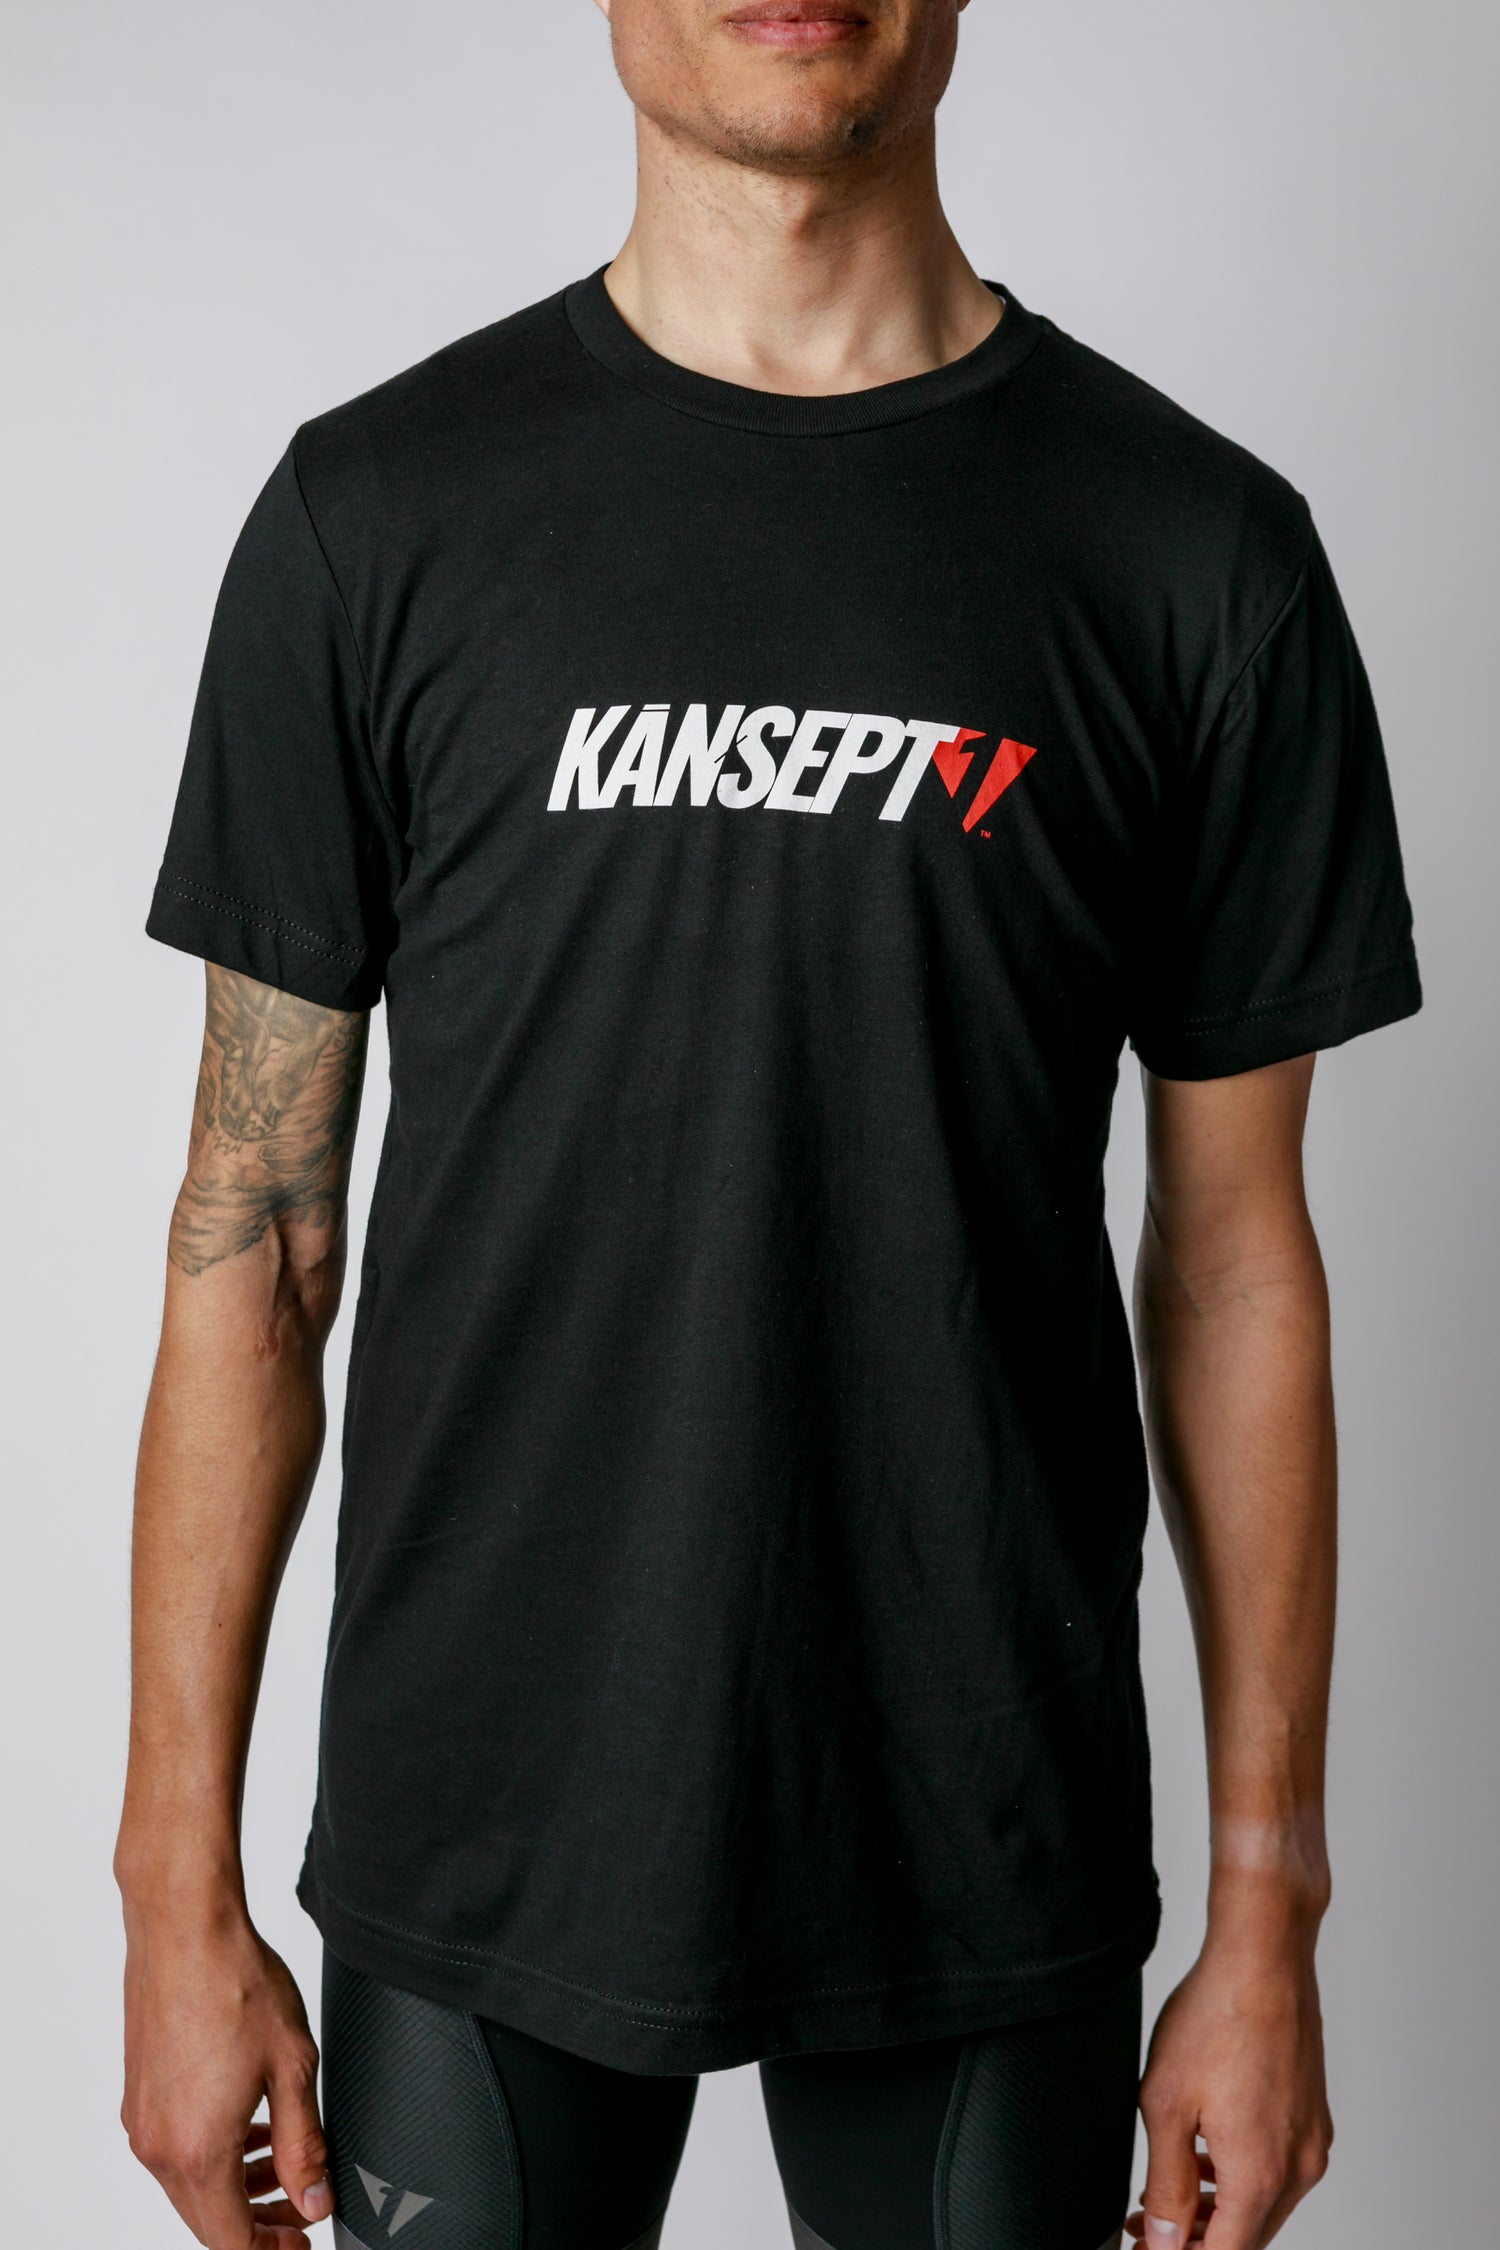 KANSEPT1 | Men's Team Issue T-Shirt | Obsidian Black